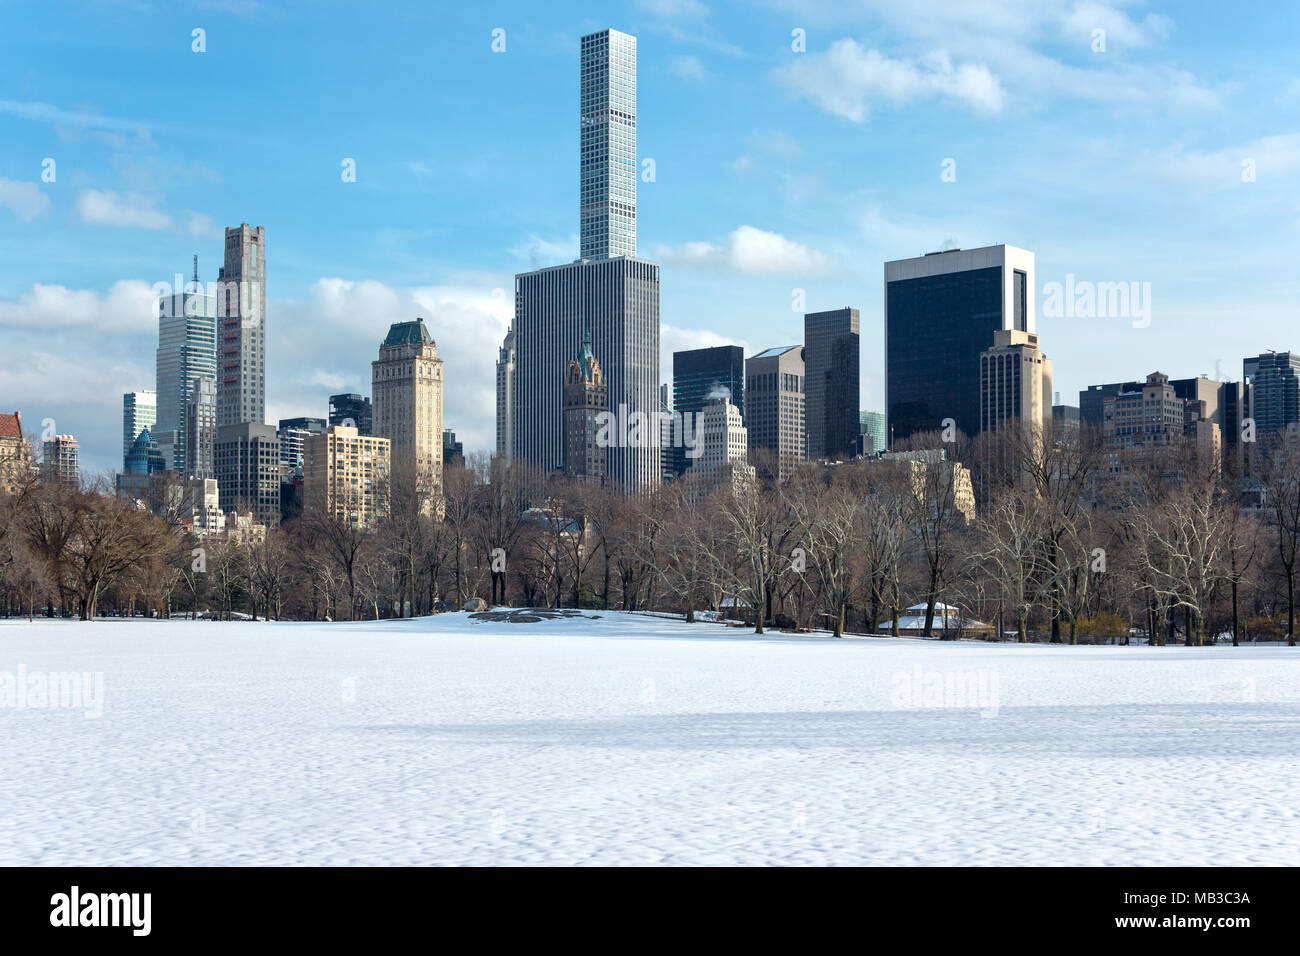 Schnee bedeckt schafe wiese CENTRAL PARK SOUTH die Skyline von MIDTOWN MANHATTAN NEW YORK CITY USA Stockfoto